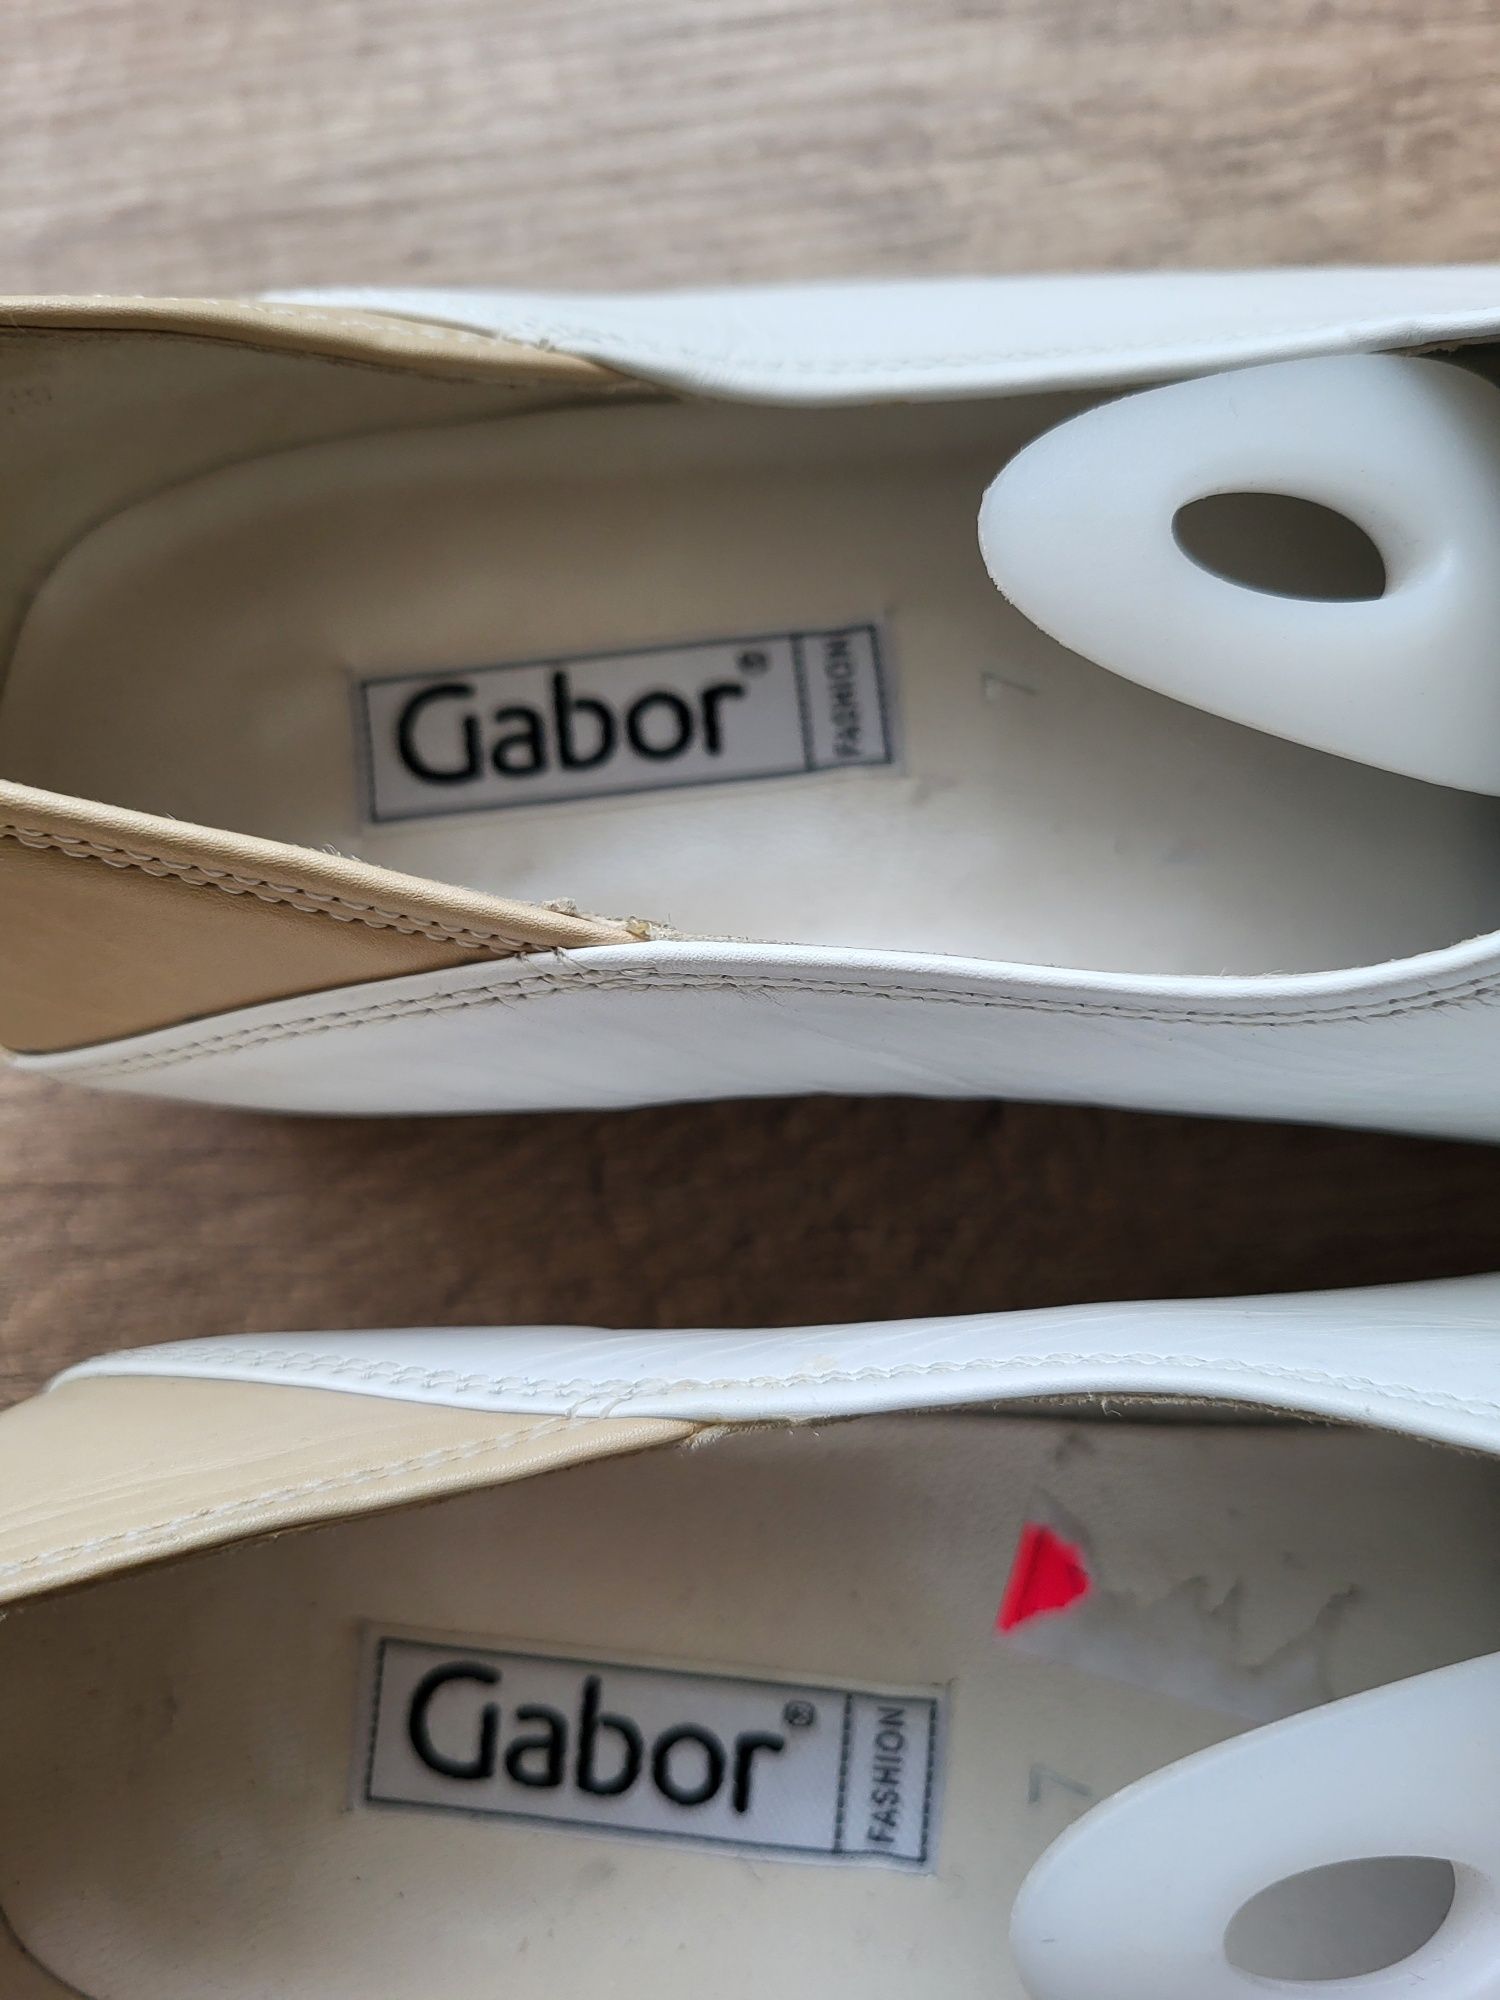 Шкіряні туфлі Gabor